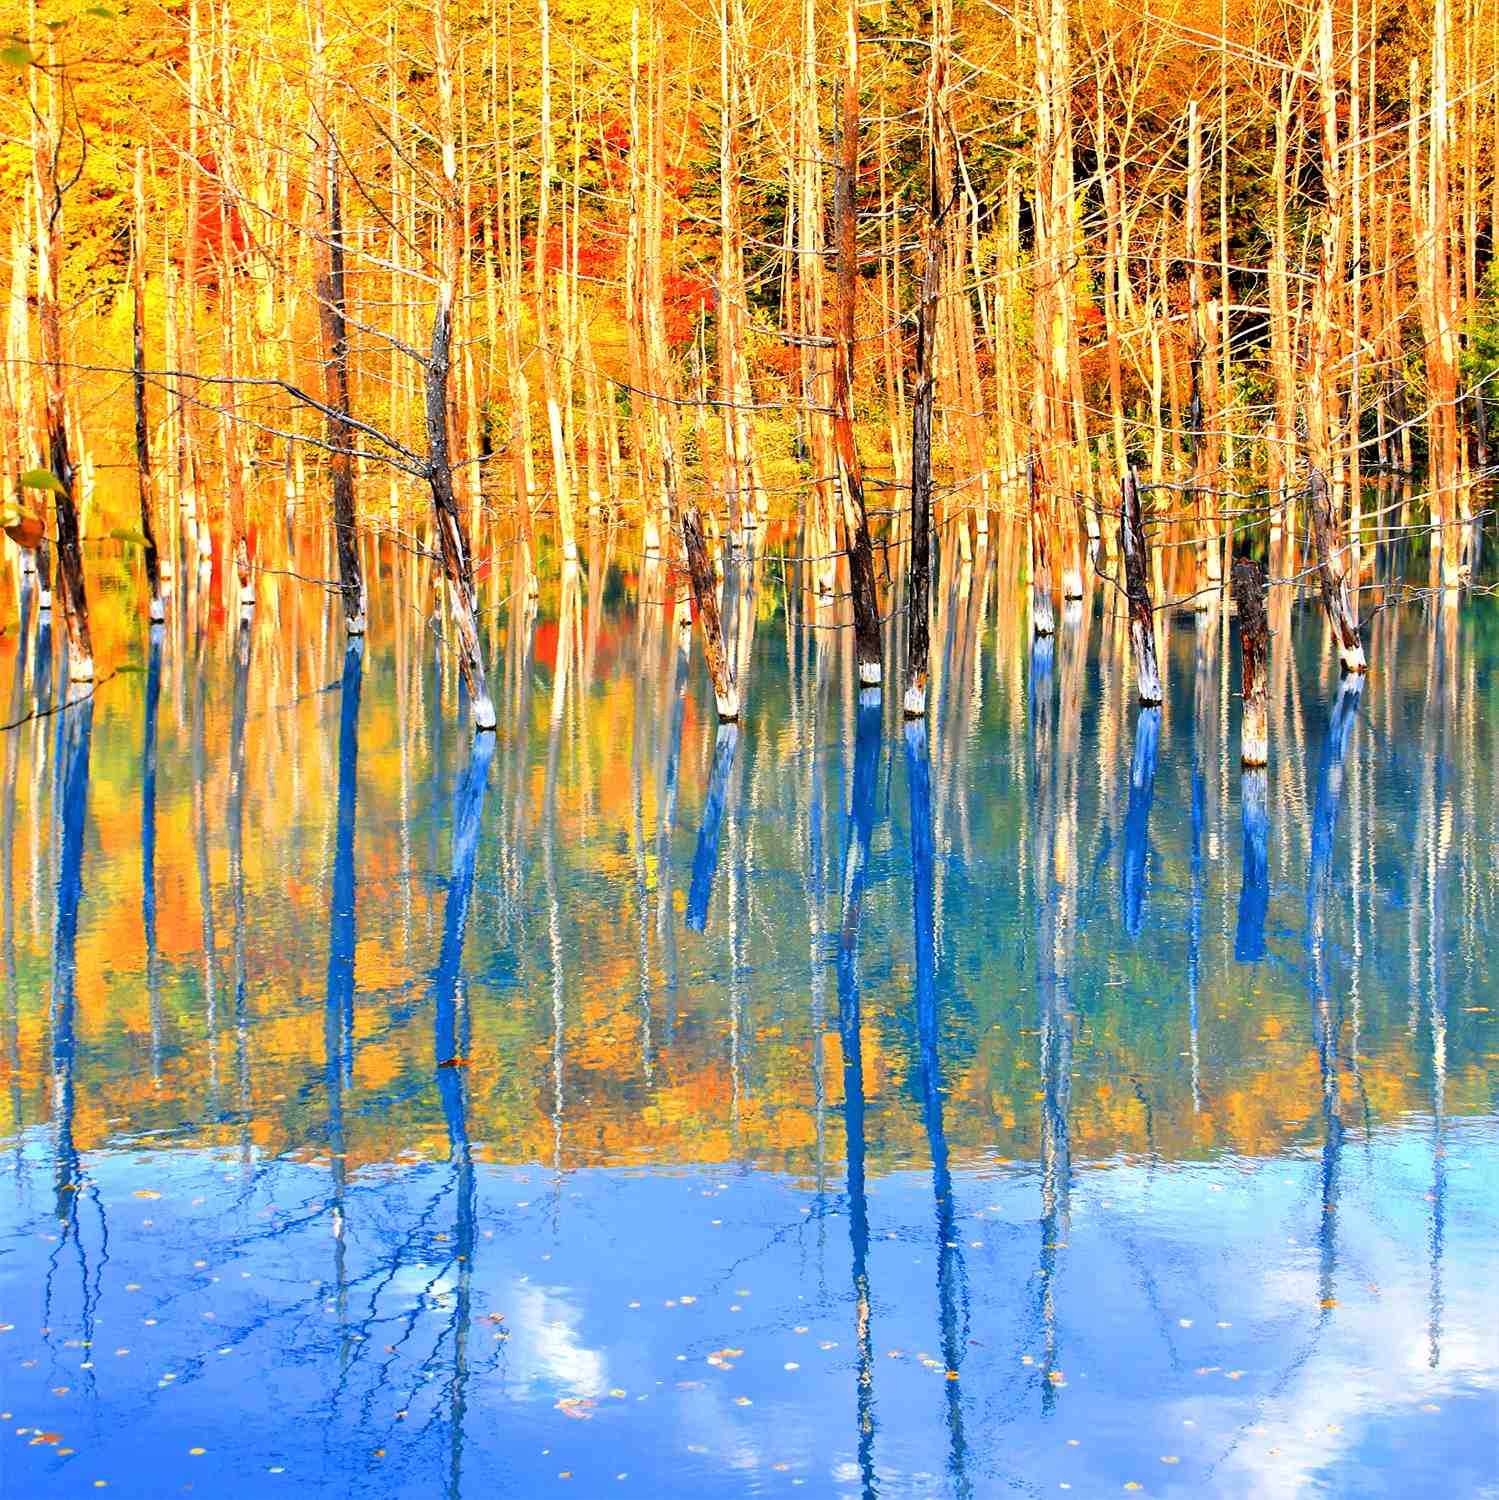 Blue Pond in Biei, Hokkaido = Shutterstock 6